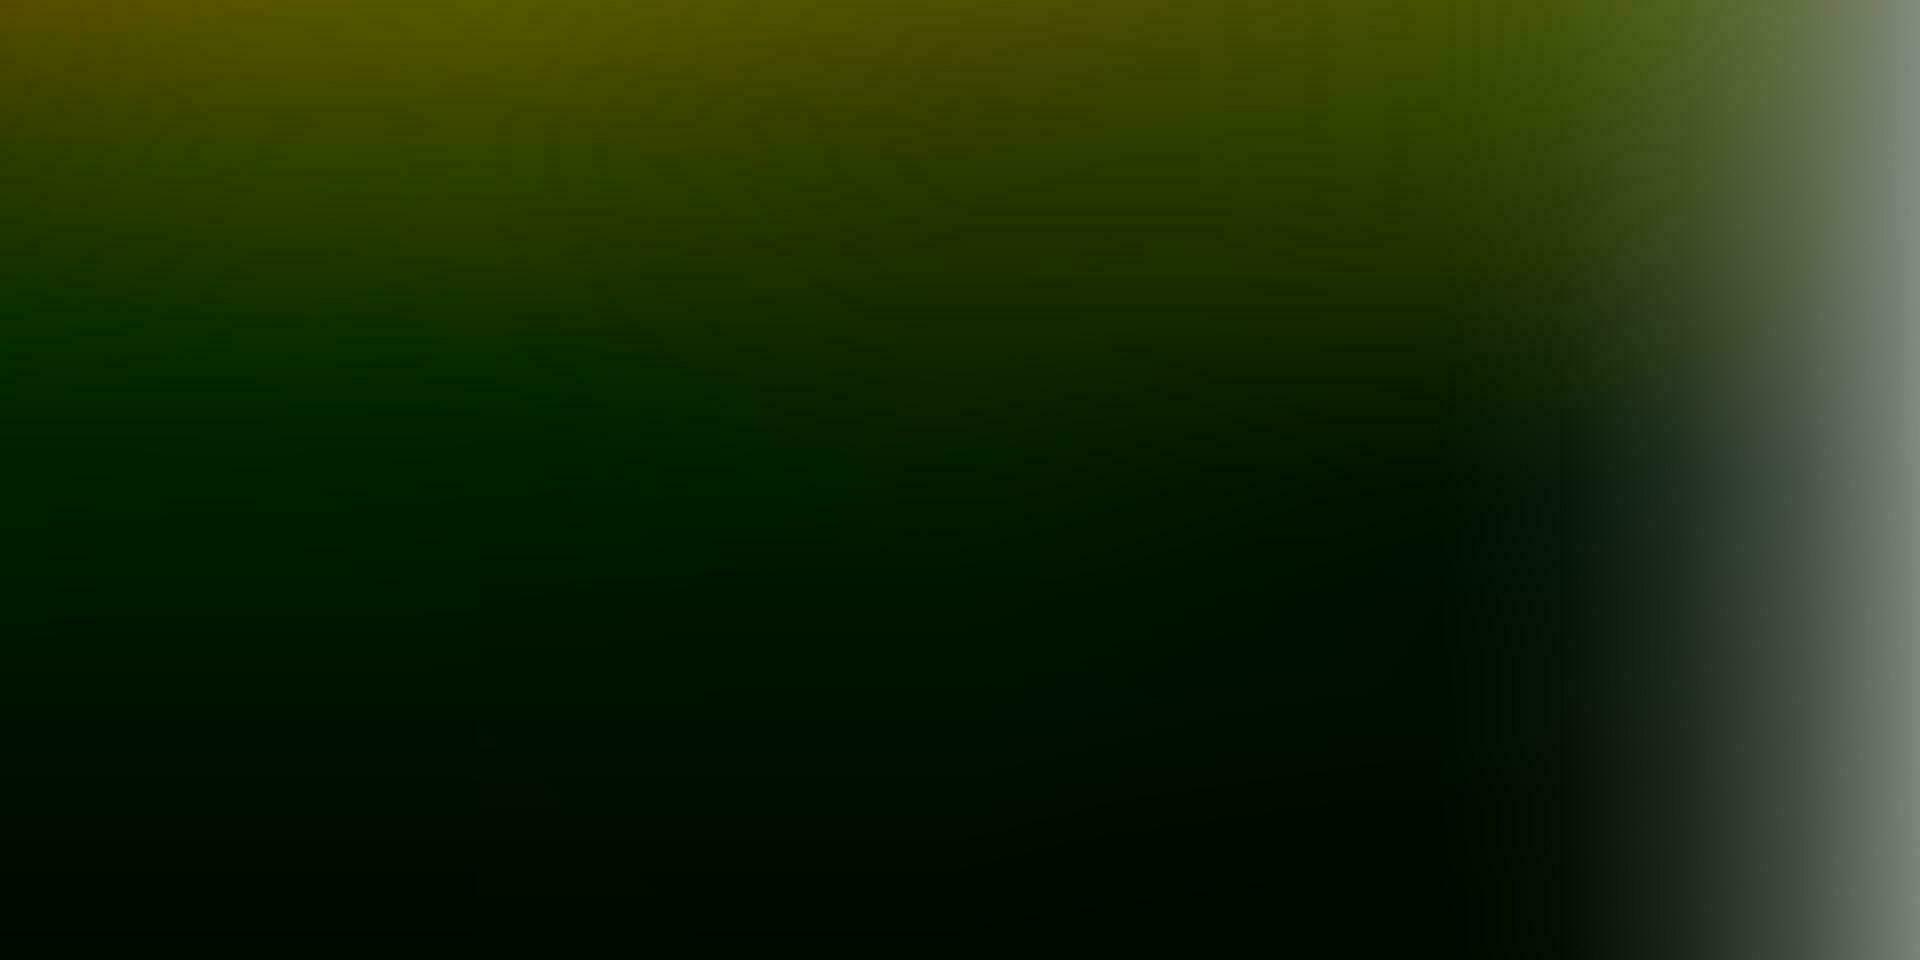 ljusgrön, gul vektor abstrakt oskärpa mall.